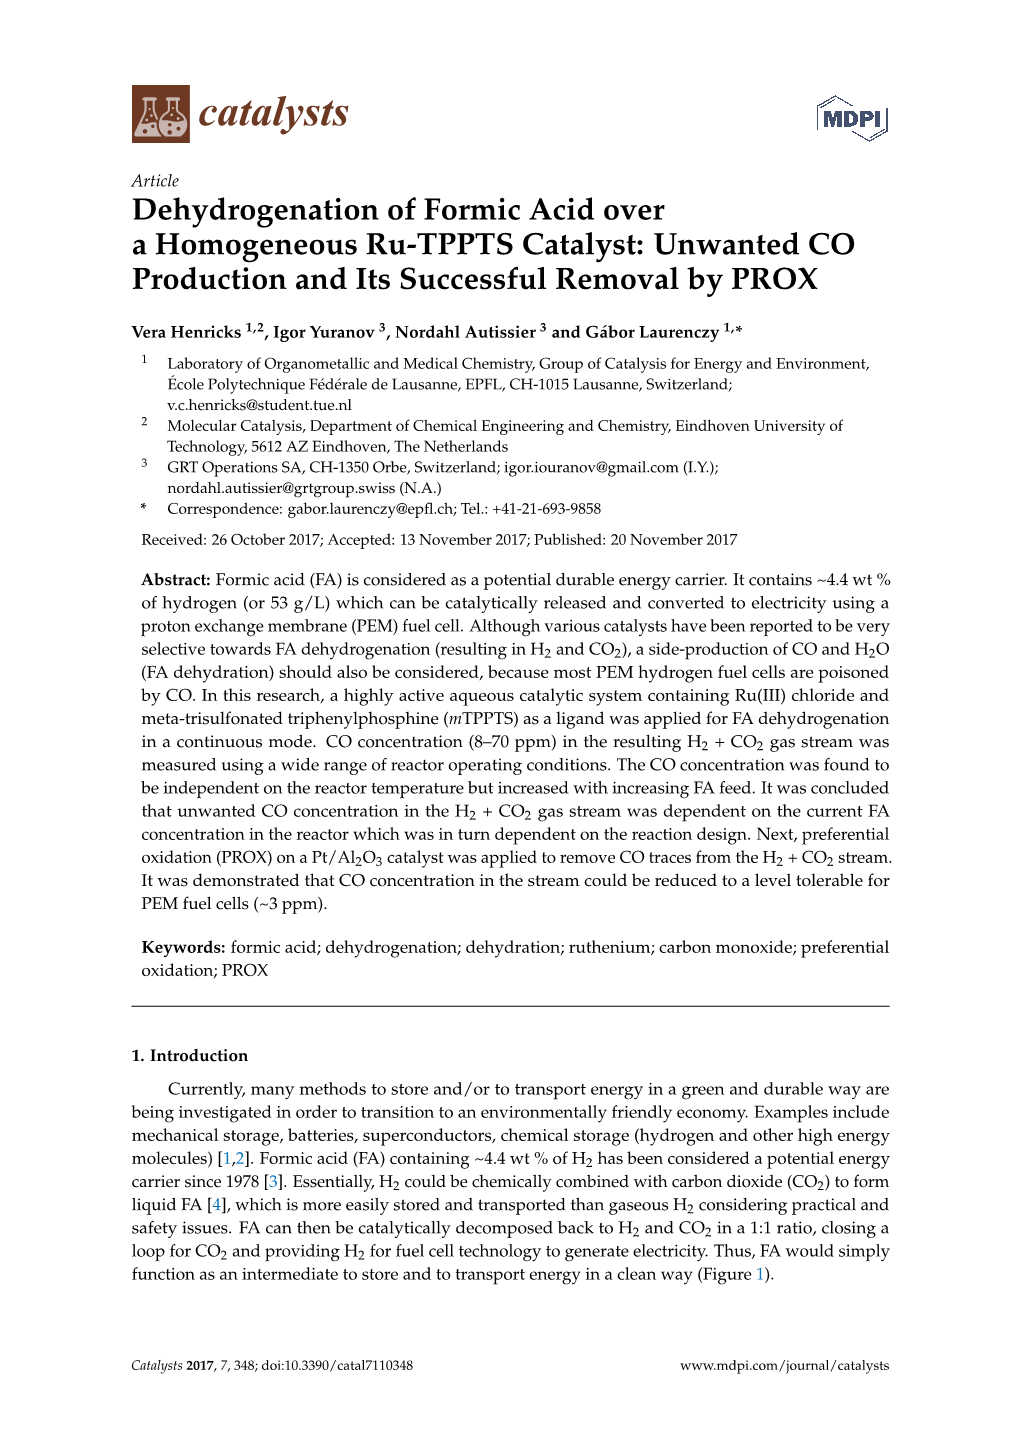 Dehydrogenation of Formic Acid Overa Homogeneous Ru-TPPTS